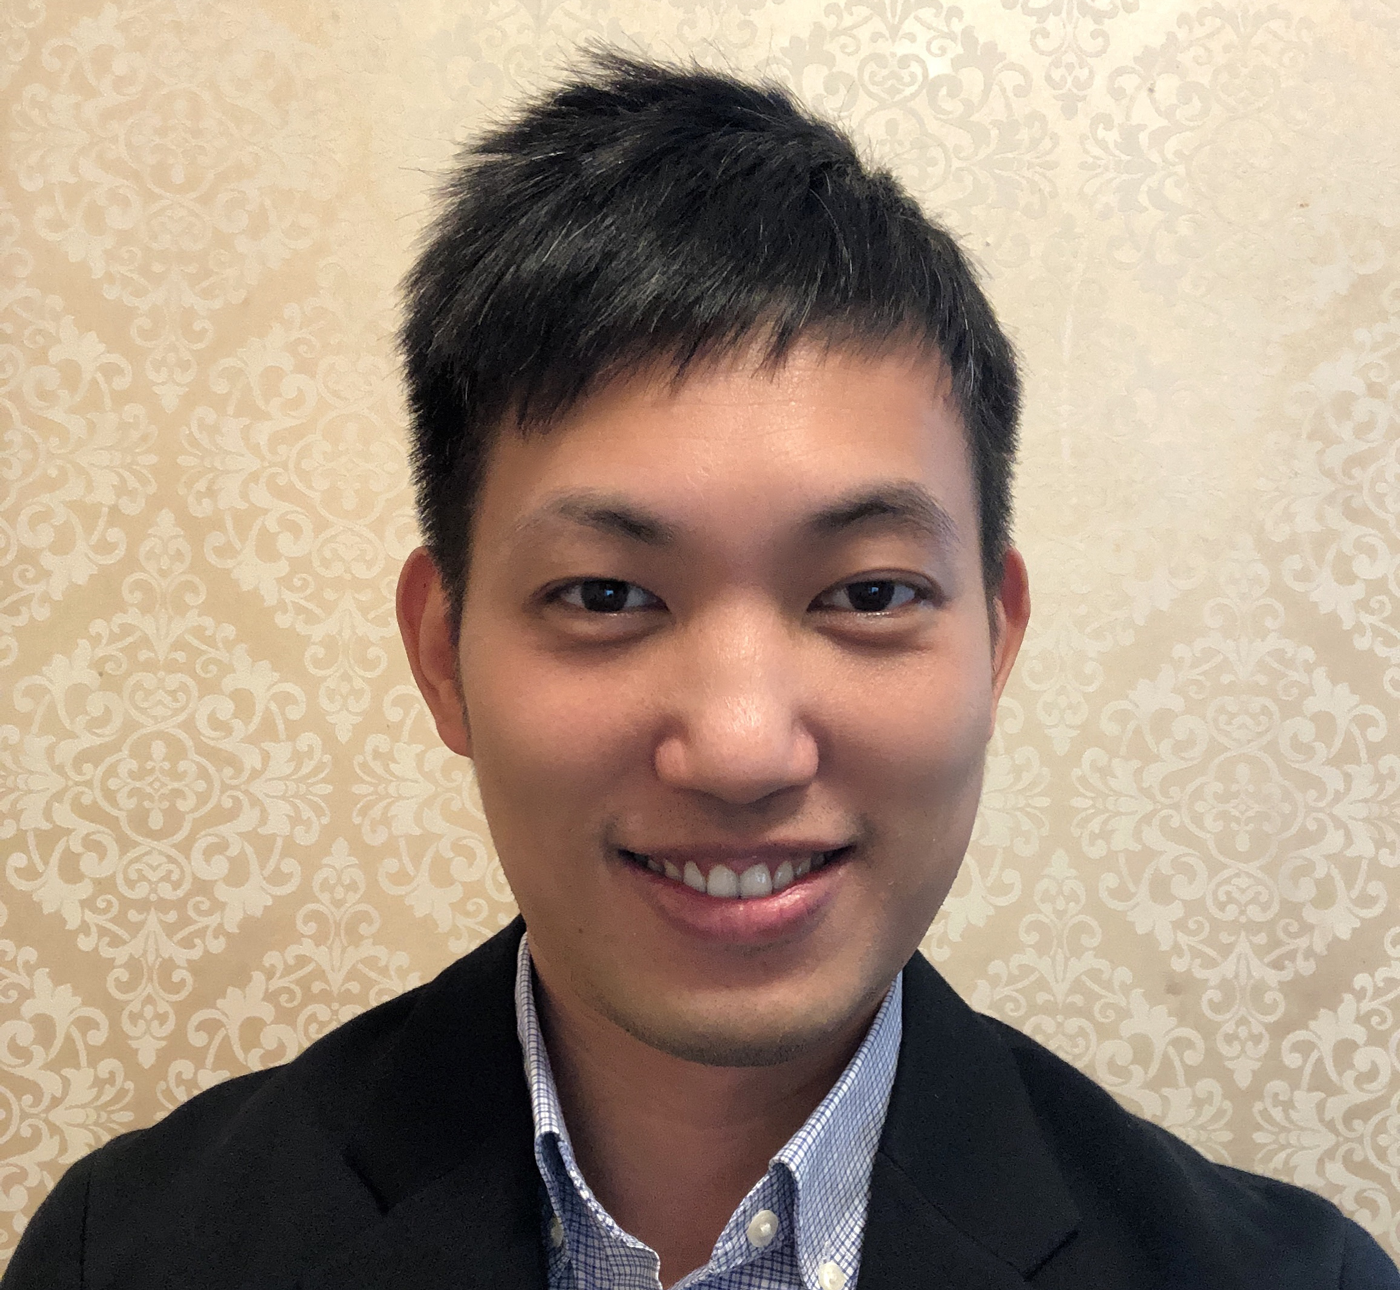 Jimmy Xu - Director of Business Development, China - headshot